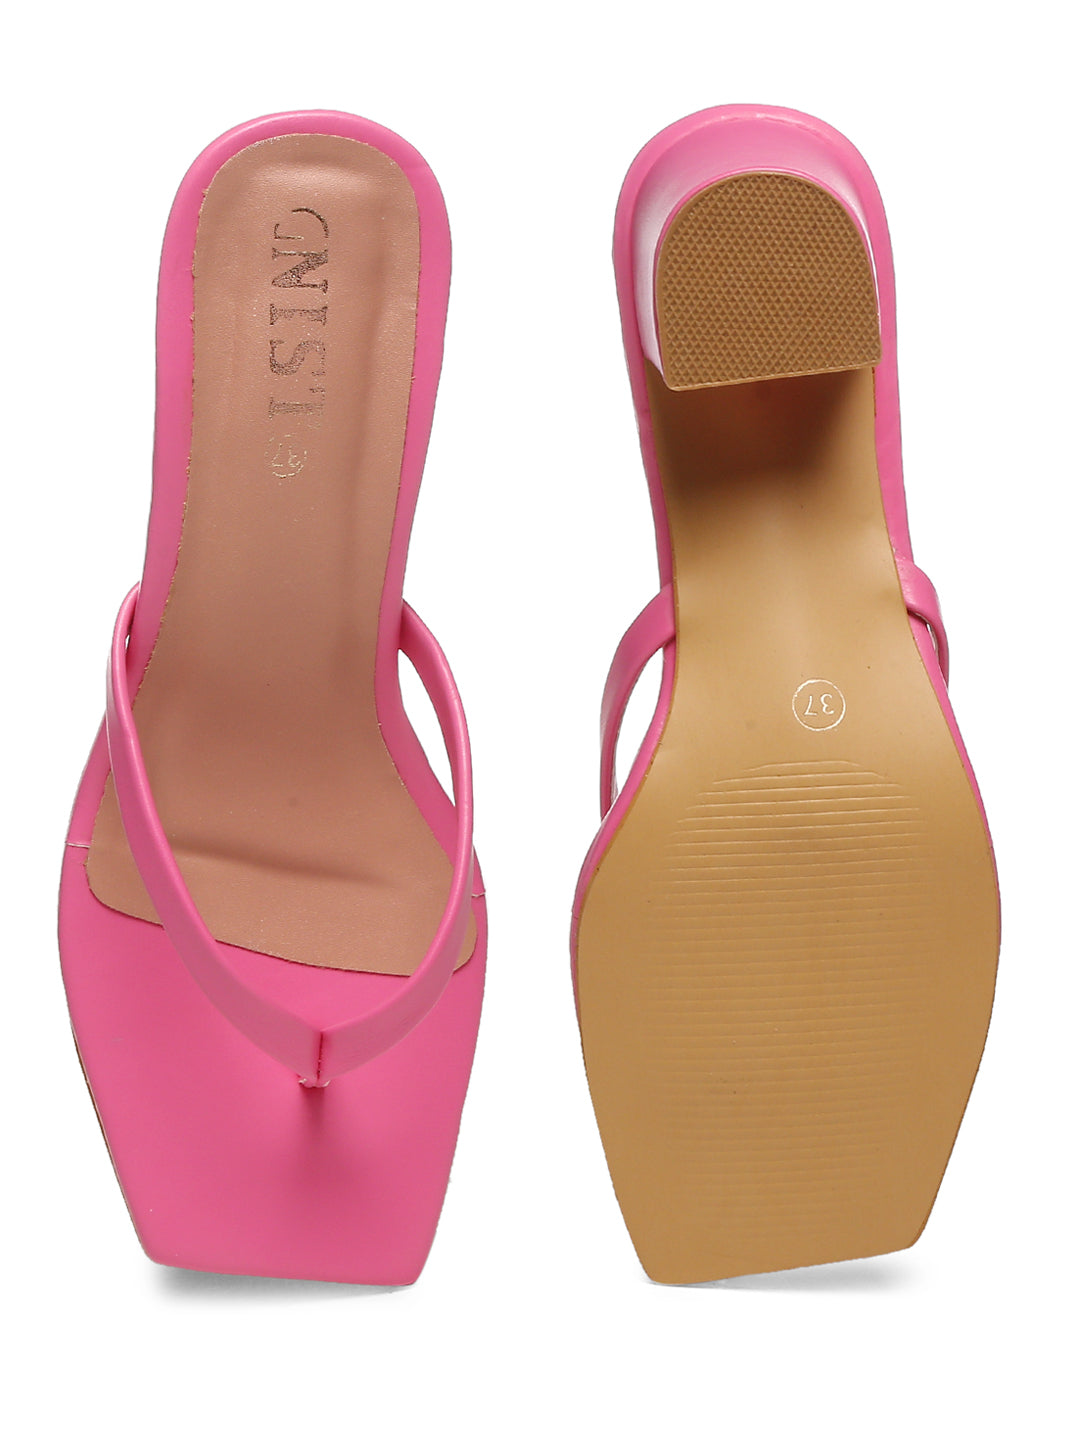 GNIST Hot Pink V shape Block Heel